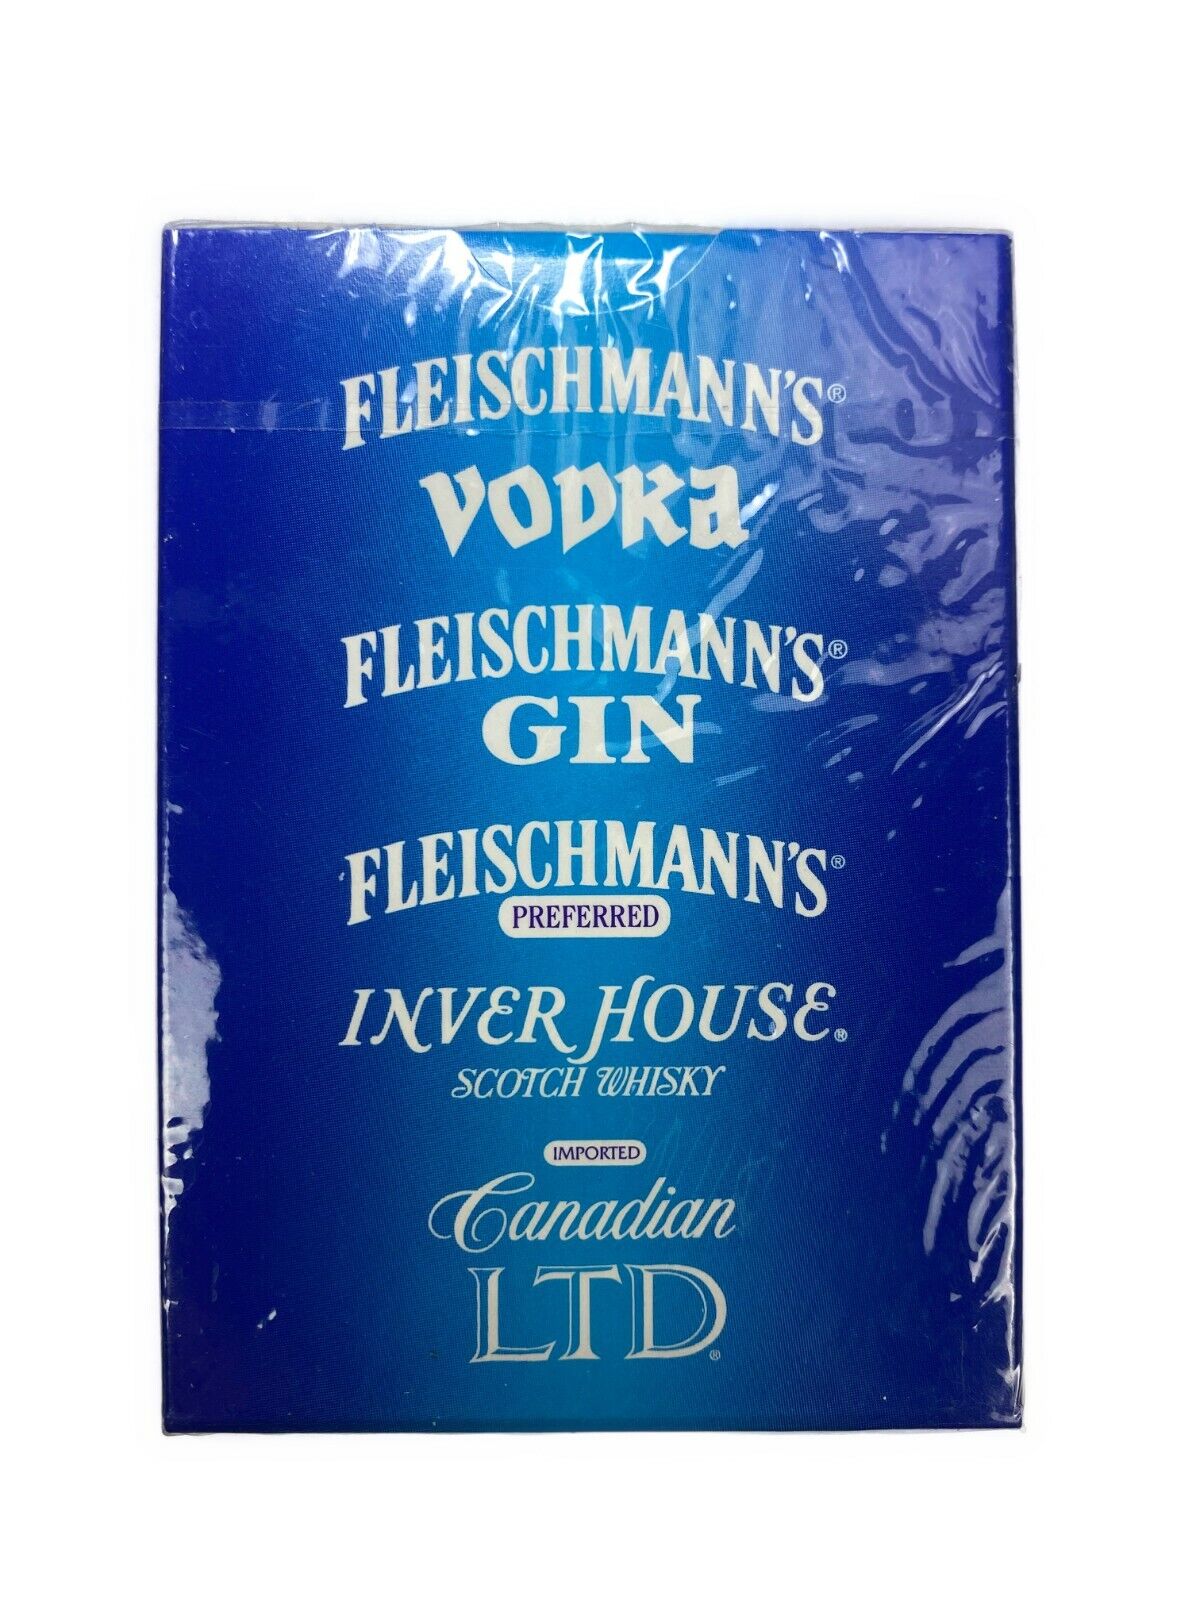 Fleischmann’s Vodka Gin Scotch Whiskey Deck Playing Cards Sealed New Vtg 1995